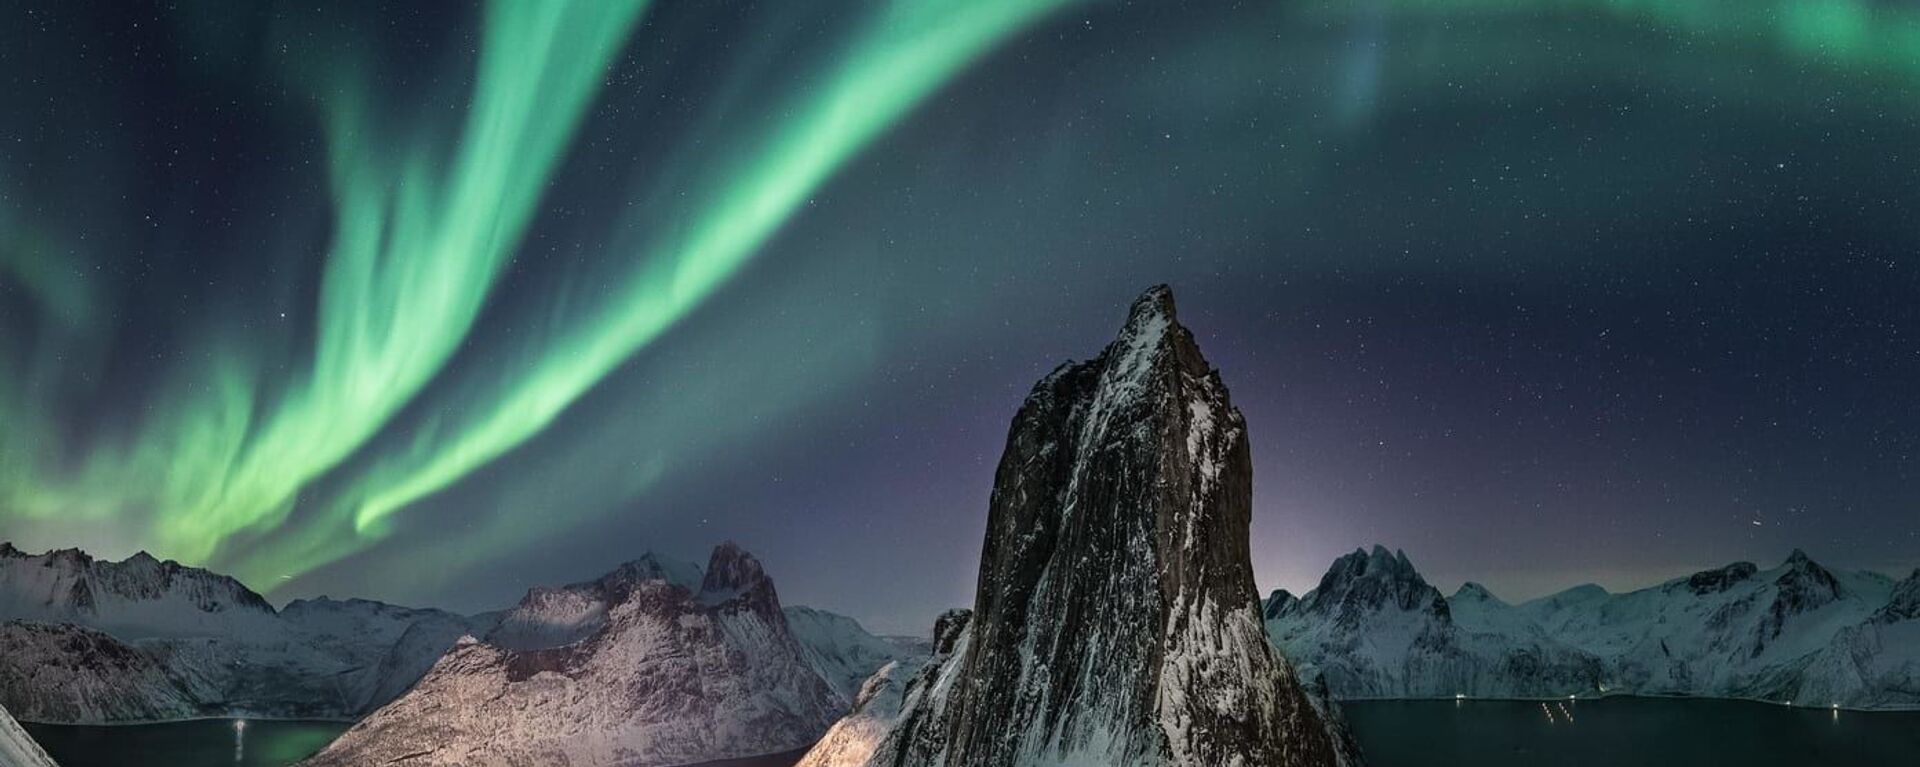 صورة بعنوان كاتدرائية أضواء الشمال، للمصور فرويديس دالهيم من النرويج، التي دخلت ضمن قائمة أفضل مصور أضواء الشمال لعام 2021.  - سبوتنيك عربي, 1920, 08.12.2021